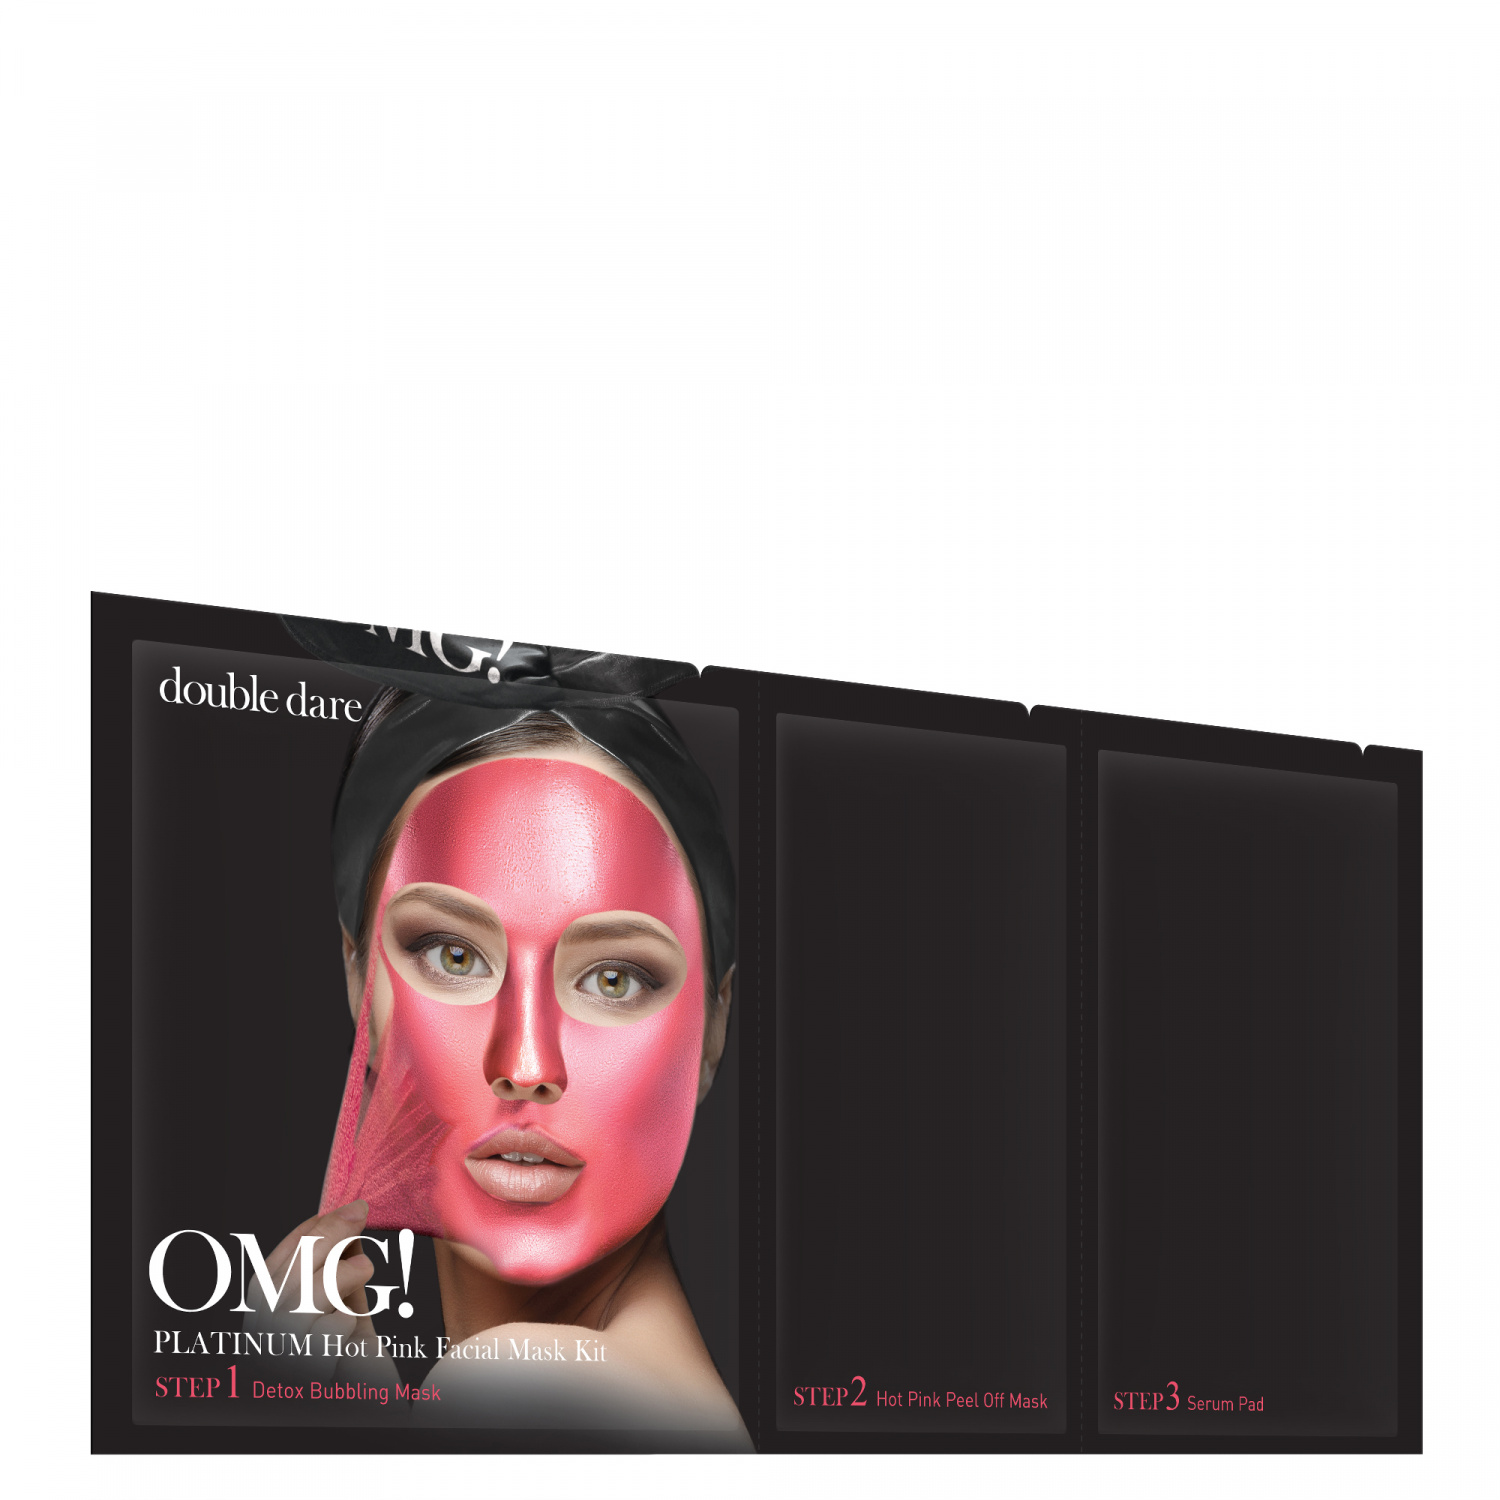 Double Dare OMG! Platinum HOT PINK Facial Mask Kit - интернет-магазин профессиональной косметики Spadream, изображение 40727